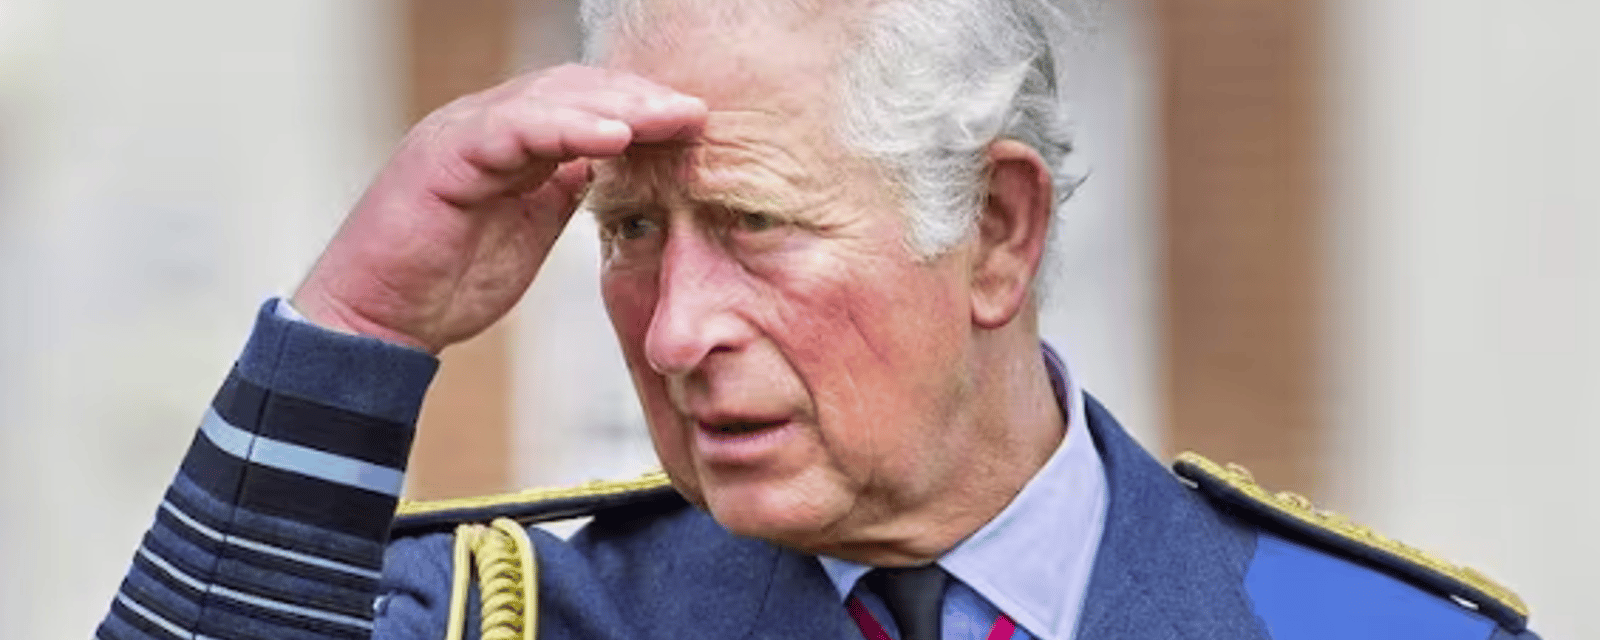 Le roi Charles III annonce qu'il souffre d'un cancer